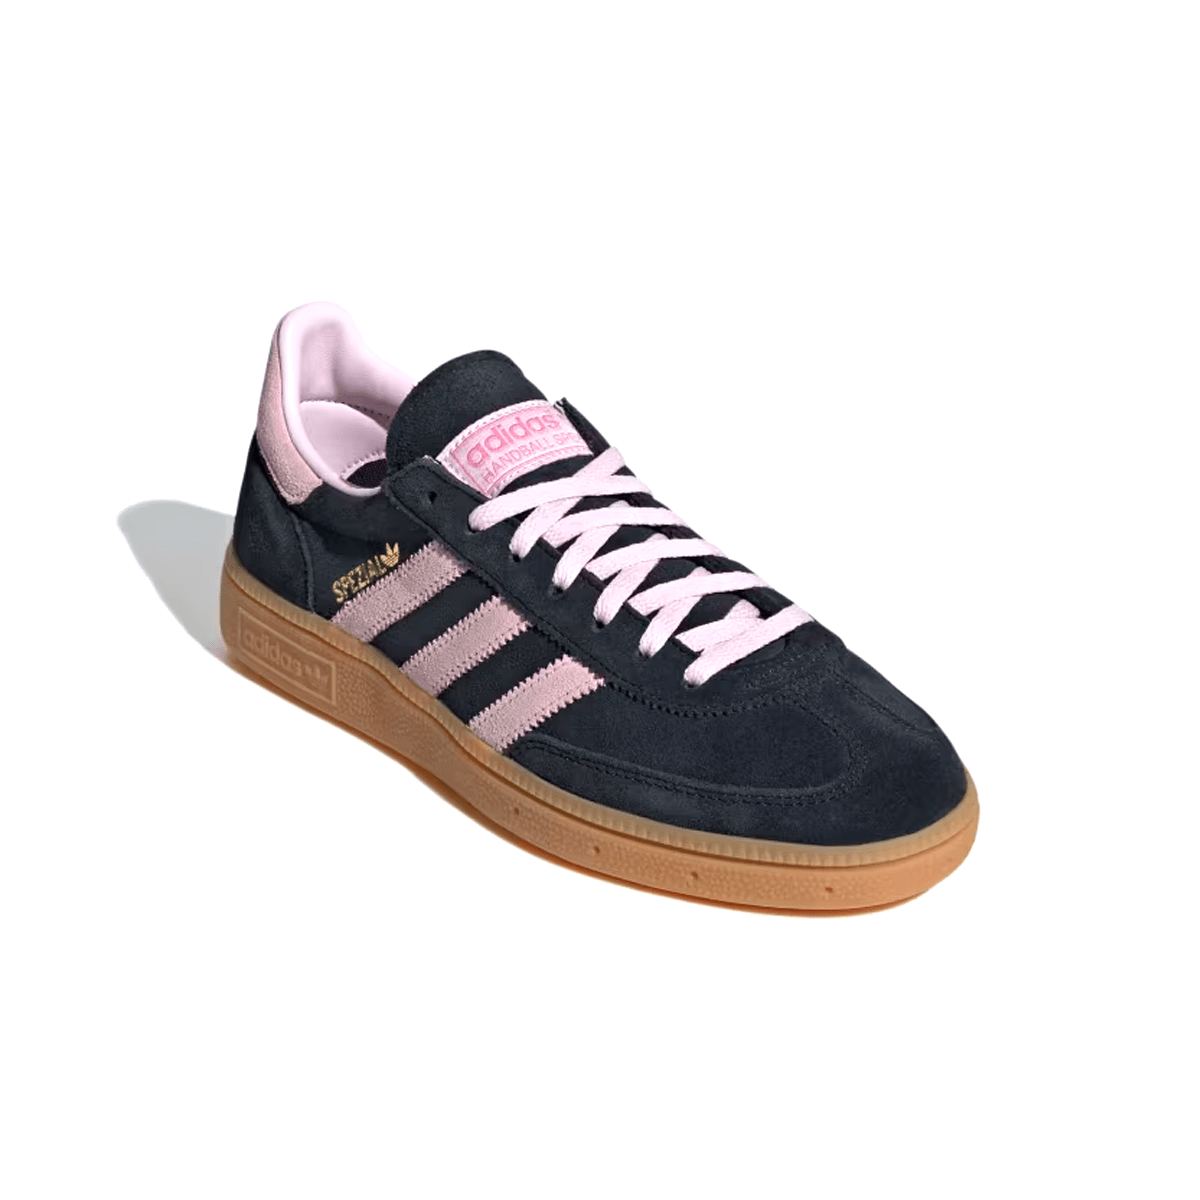 Adidas Handebol Spezial Preto/Rosa "Core Black Clear Pink" Adidas Handebol Spezial Blizz Sneakers 